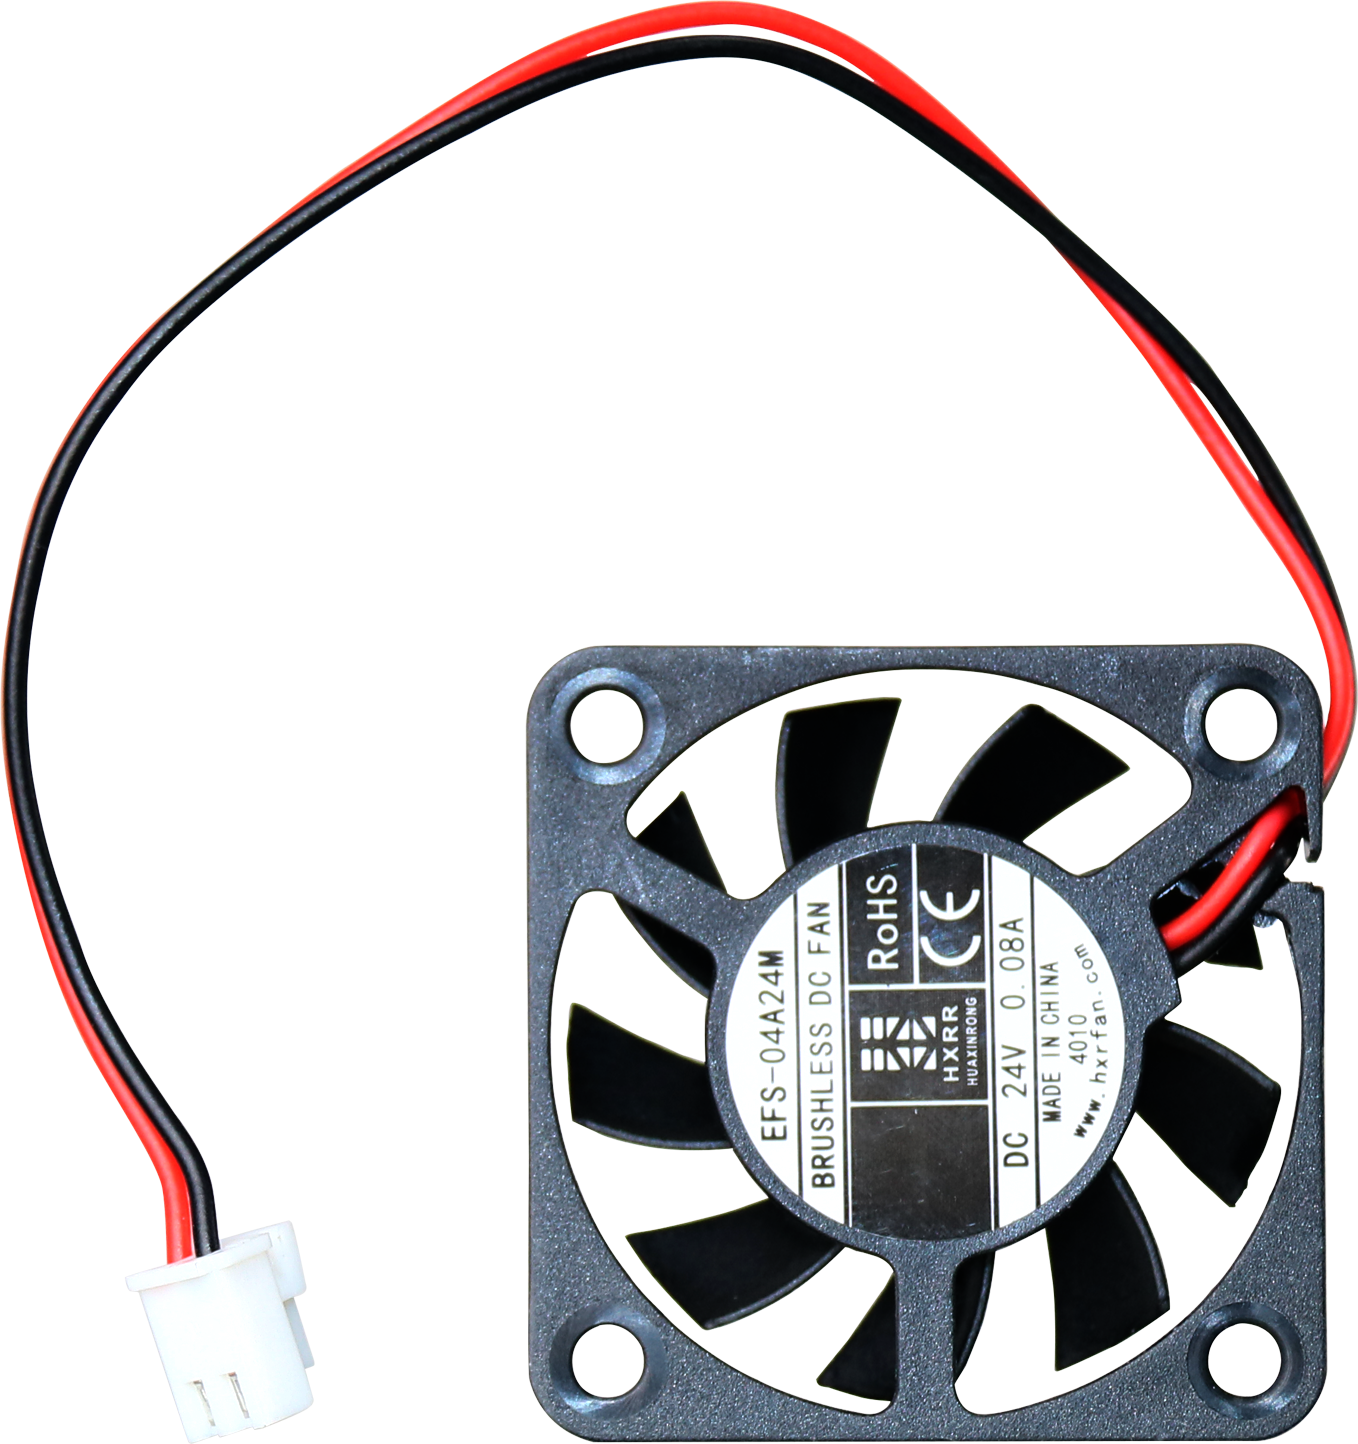 Tenlog Dual Extruder 3D Printer Cooling Fan المستخدمة في طباعة الأشياء الباردة تبديد الحرارة واللوحة الأم
